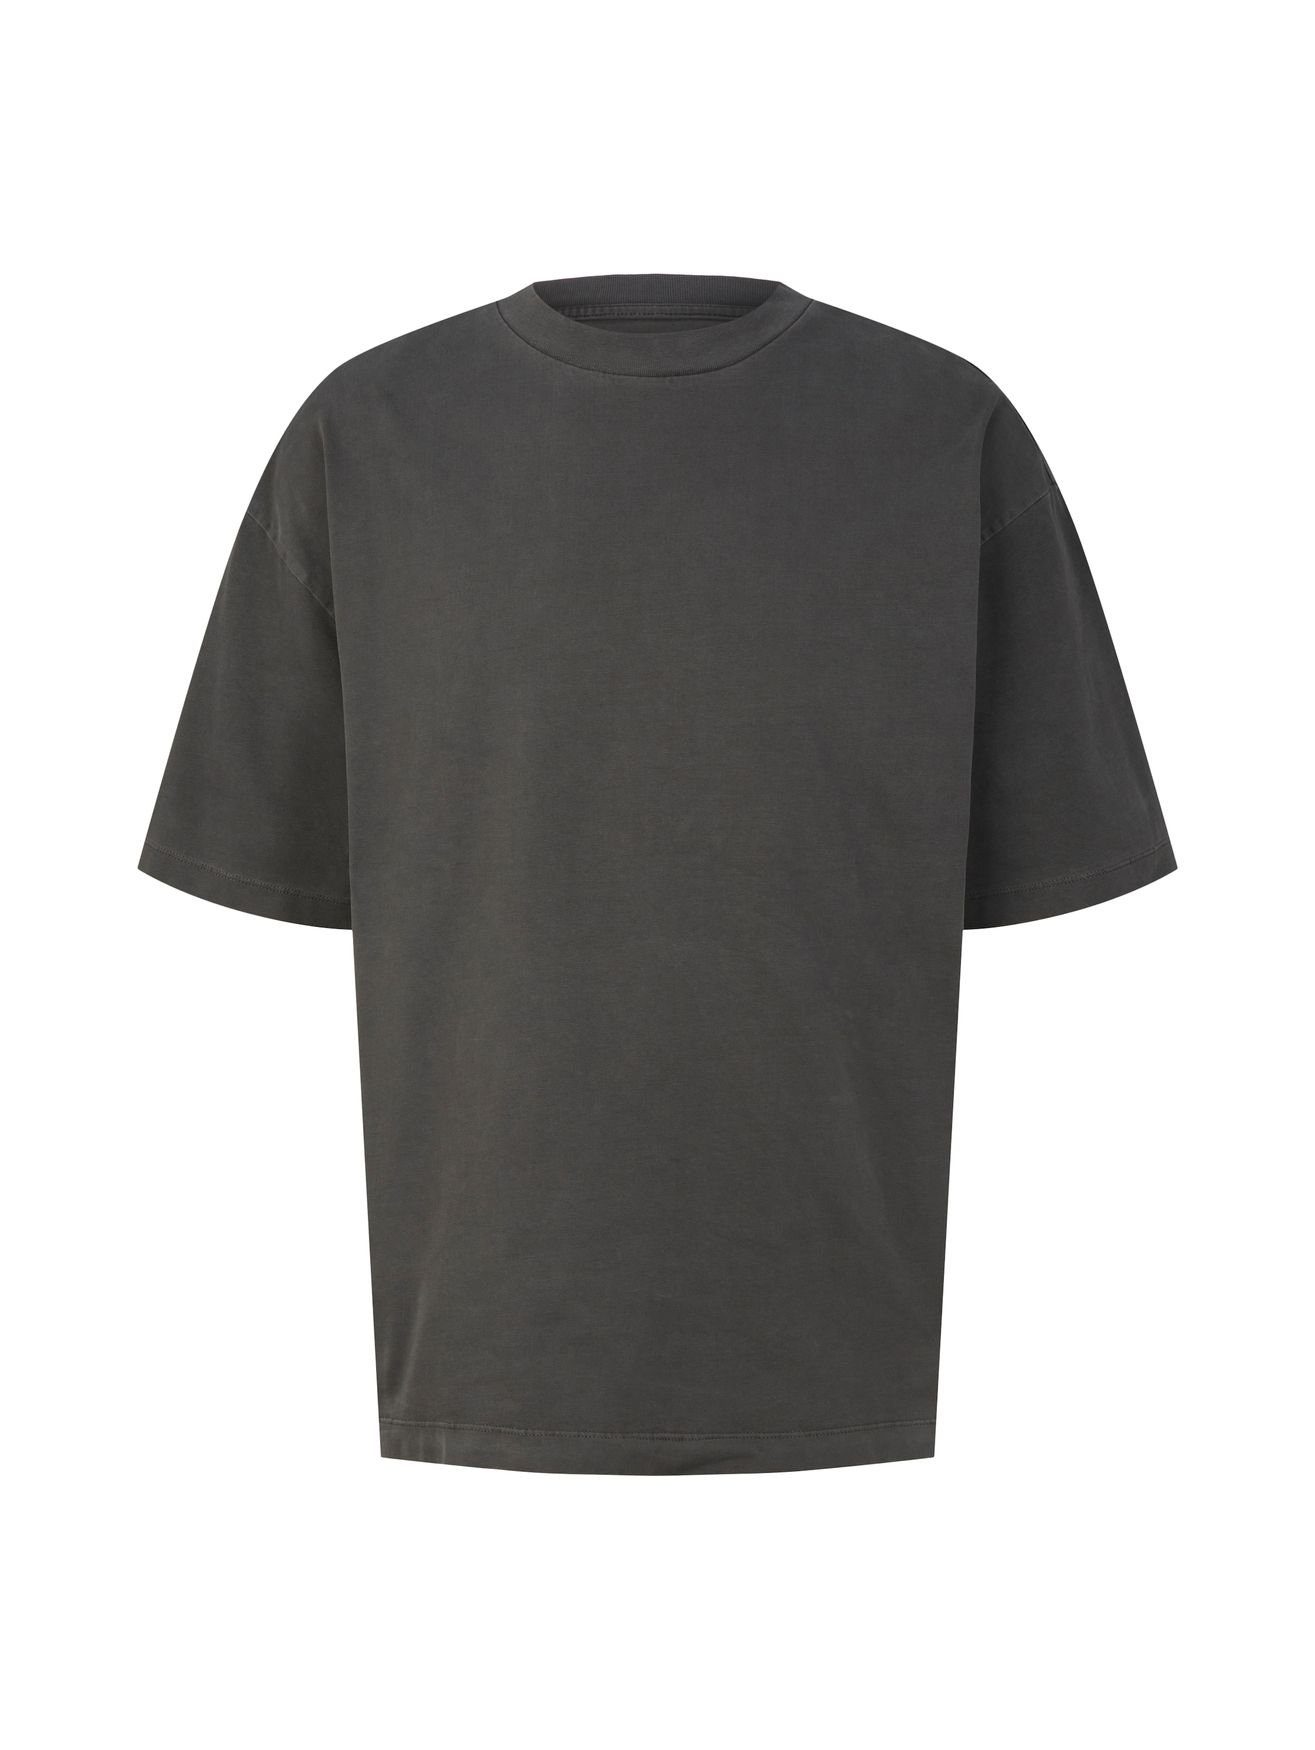 Lange schwarze T-Shirts für Herren online kaufen | OTTO